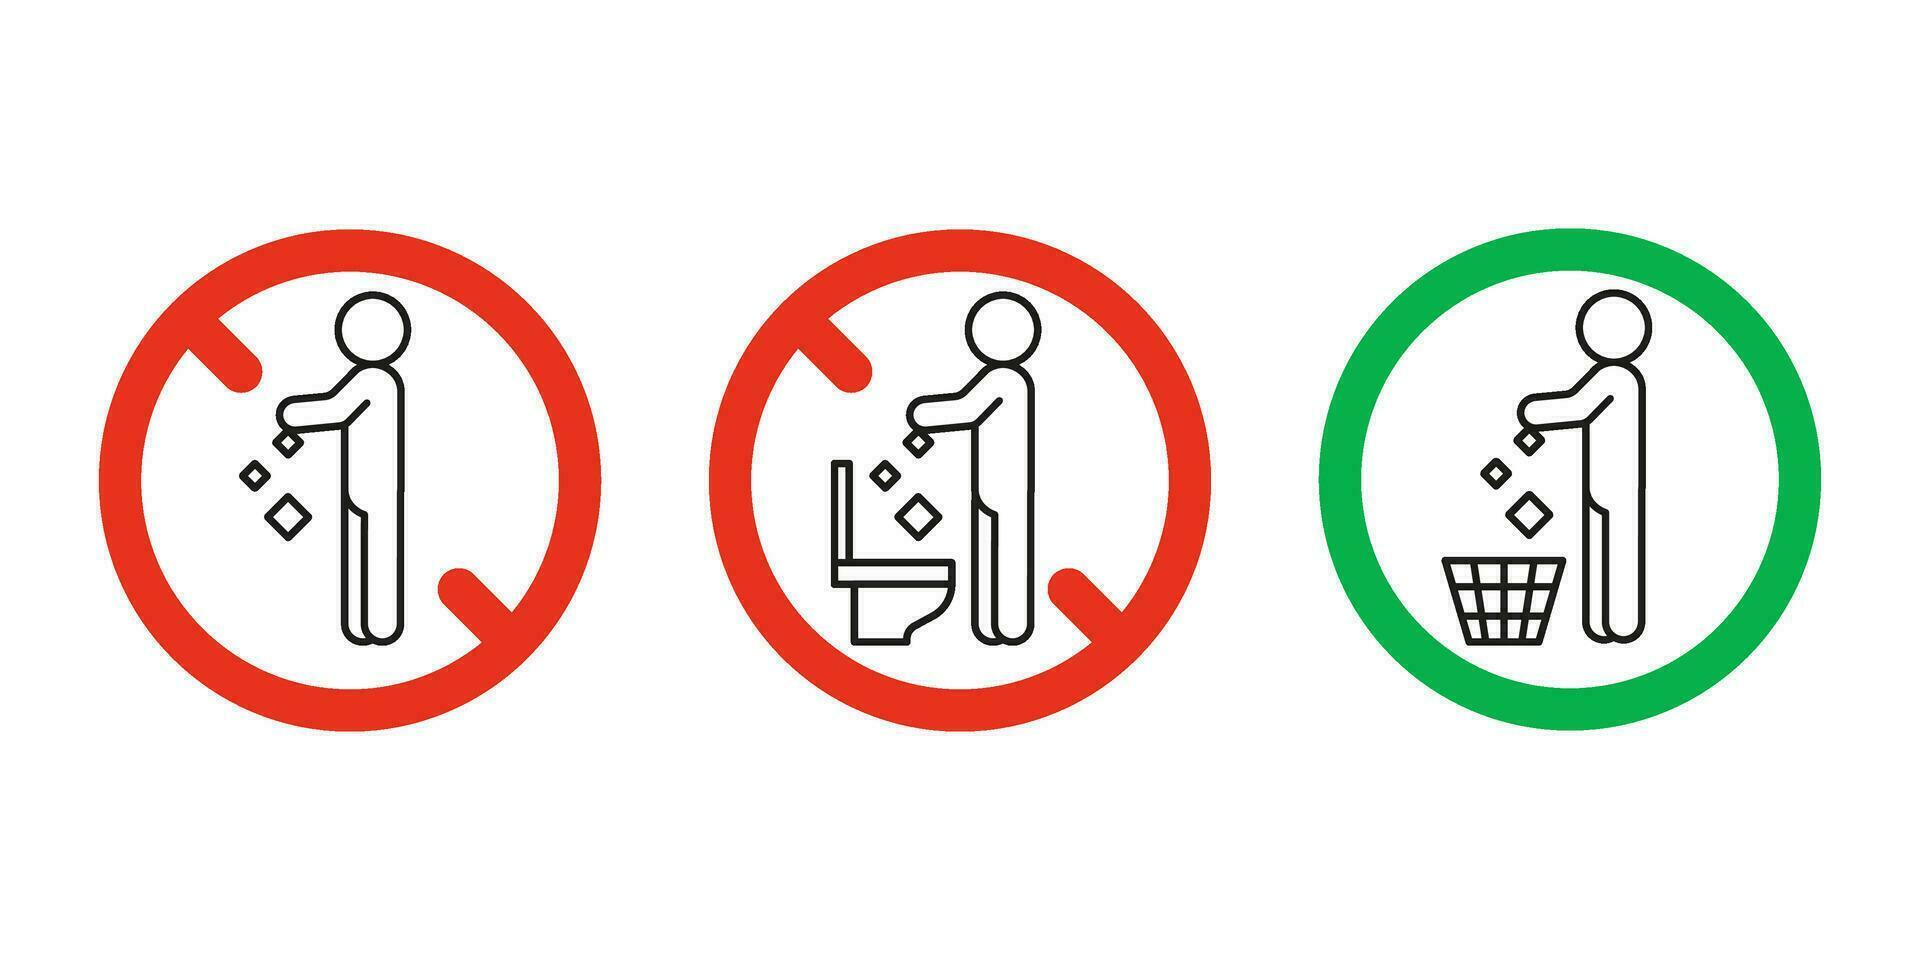 regel nemen uit uitschot in mand maar niet in toilet pan, verbod waarschuwing teken. Doen niet Gooi vuilnis in toilet. kan Gooi onzin in uitschot kan. probleem van planeet vervuiling, schoon. vector